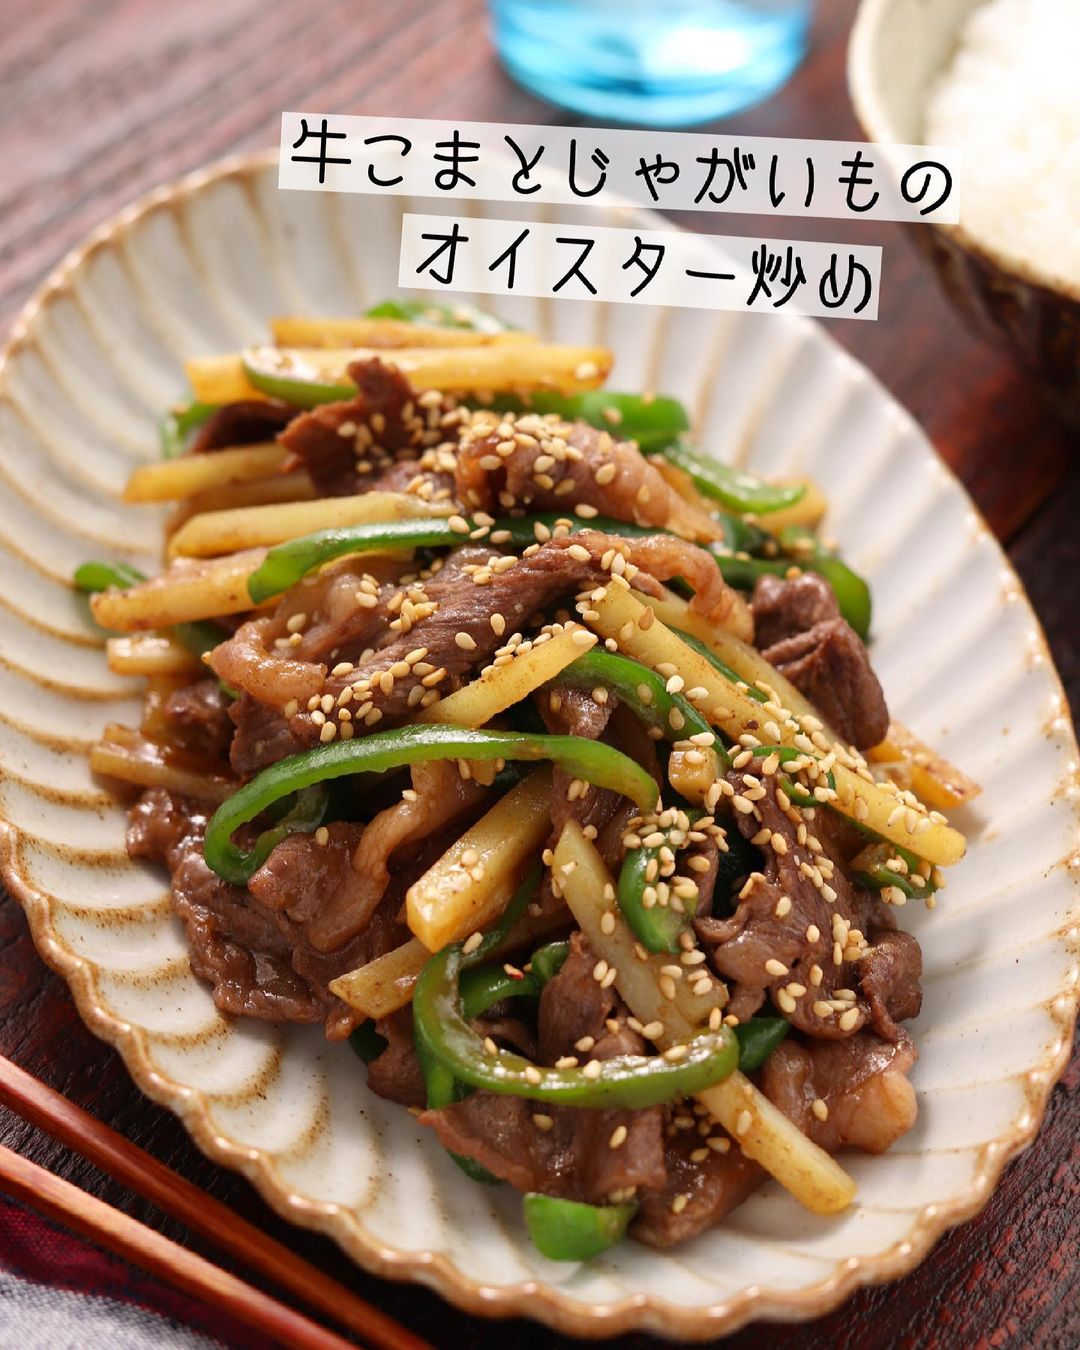 Yuu お肉も野菜もとれるよくばりおかず レシピあり Ciao Nihon